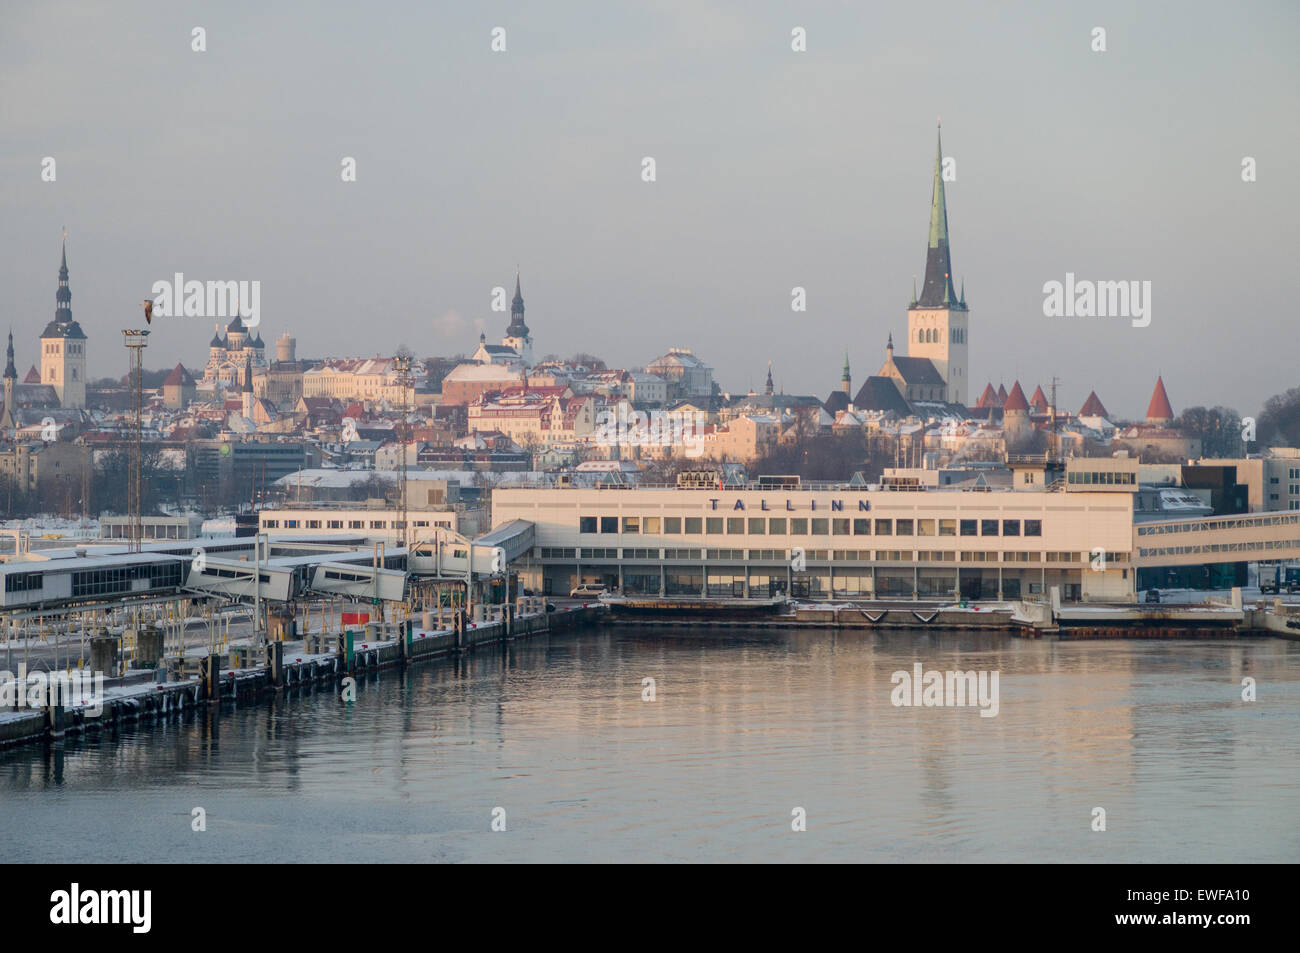 Tallinn-Meer zu portieren, eine alte Stadt Hintergrund, morgendliche Aussicht Stockfoto